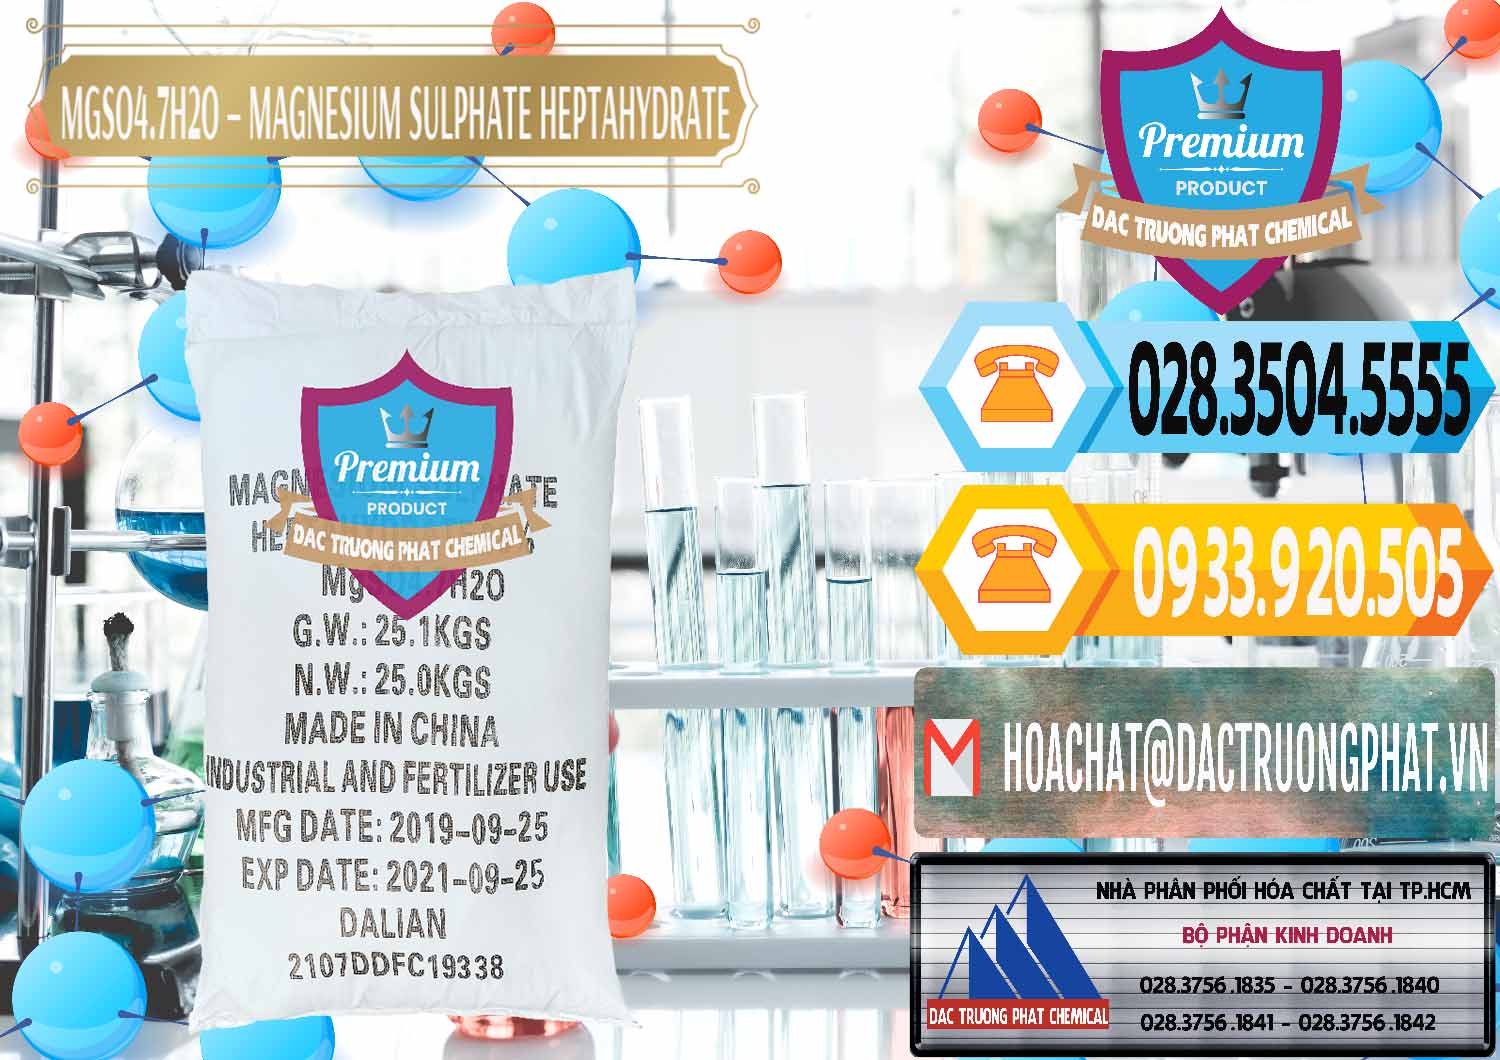 Chuyên bán _ phân phối MGSO4.7H2O – Magnesium Sulphate Heptahydrate Trung Quốc China - 0094 - Cty kinh doanh và phân phối hóa chất tại TP.HCM - hoachattayrua.net